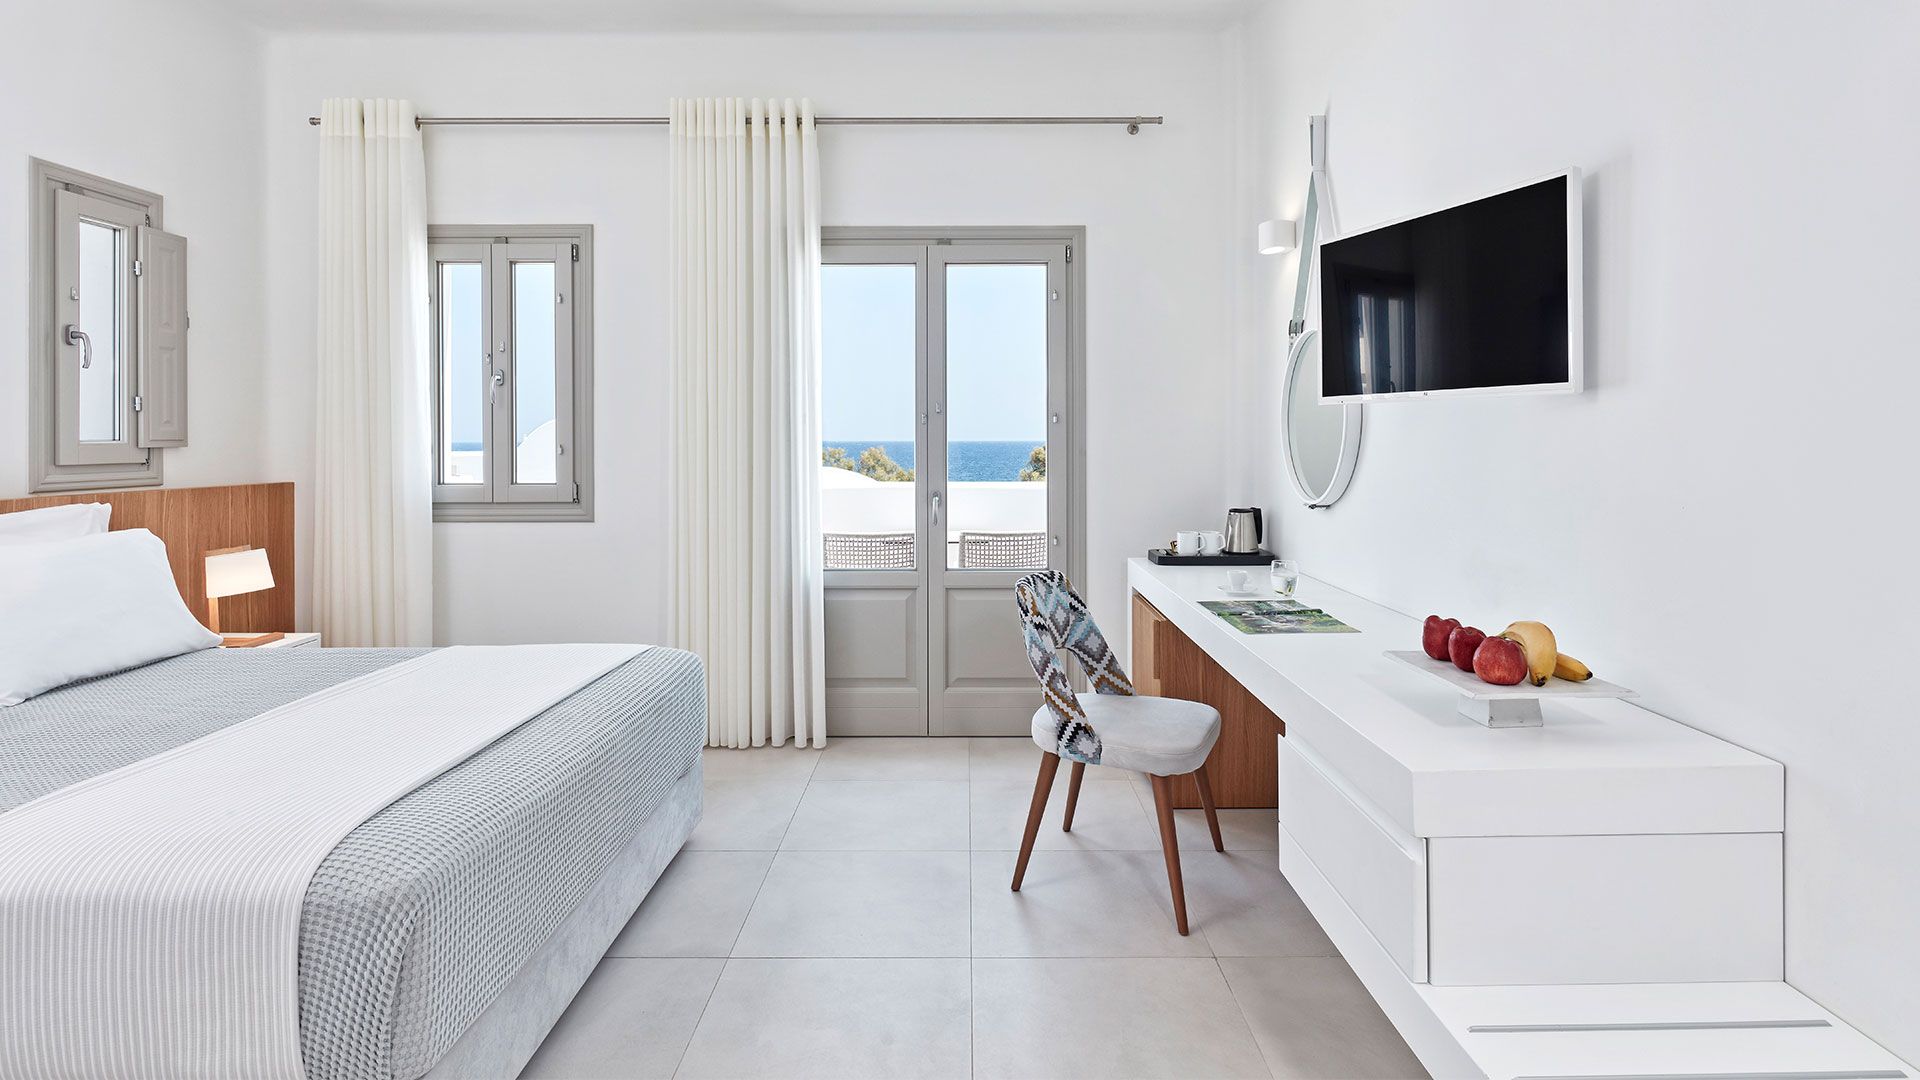 Διαμόρφωση περιβάλλοντος χώρου & Interior Design 5* Ξενοδοχείου, Παραλία Καμαρίου, Σαντορίνη